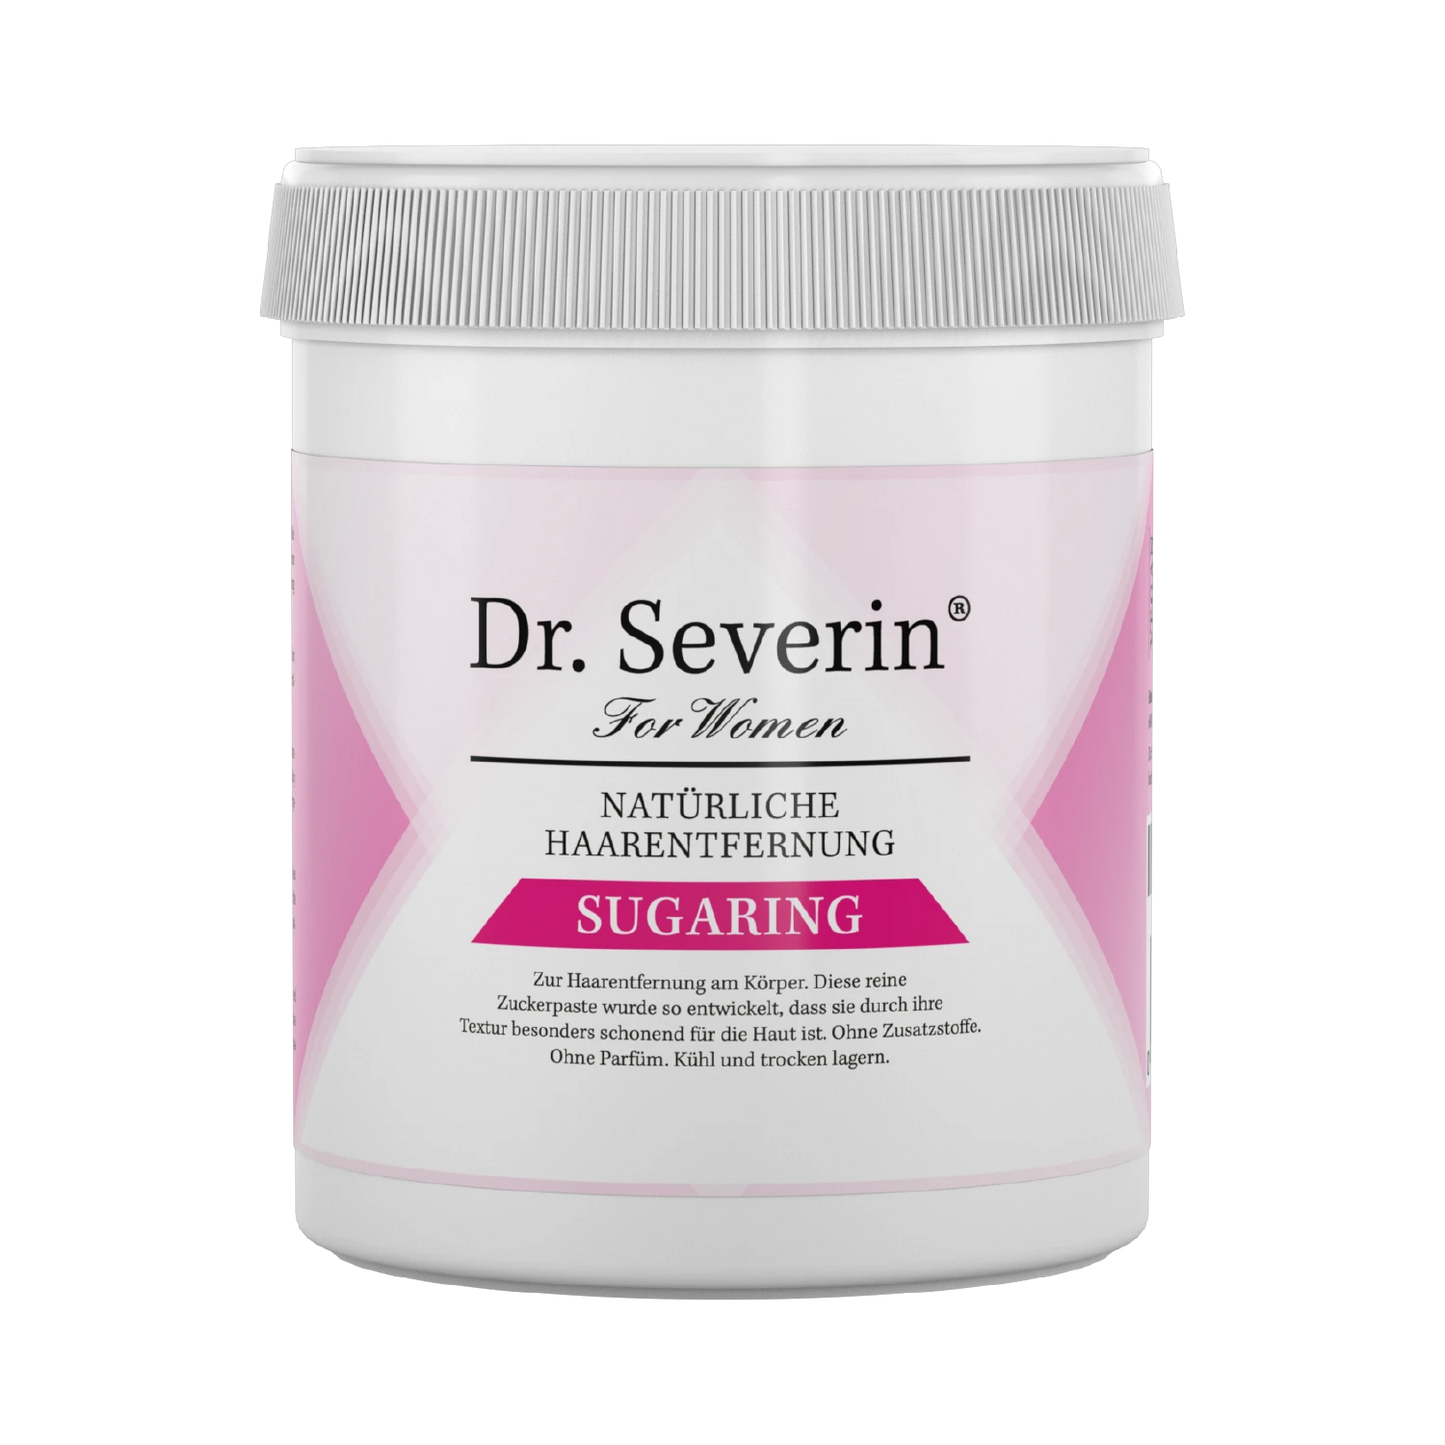 Natürliche, schmerzlose und gründliche Haarentfernung mit Zucker, Dr. Severin Sugaring